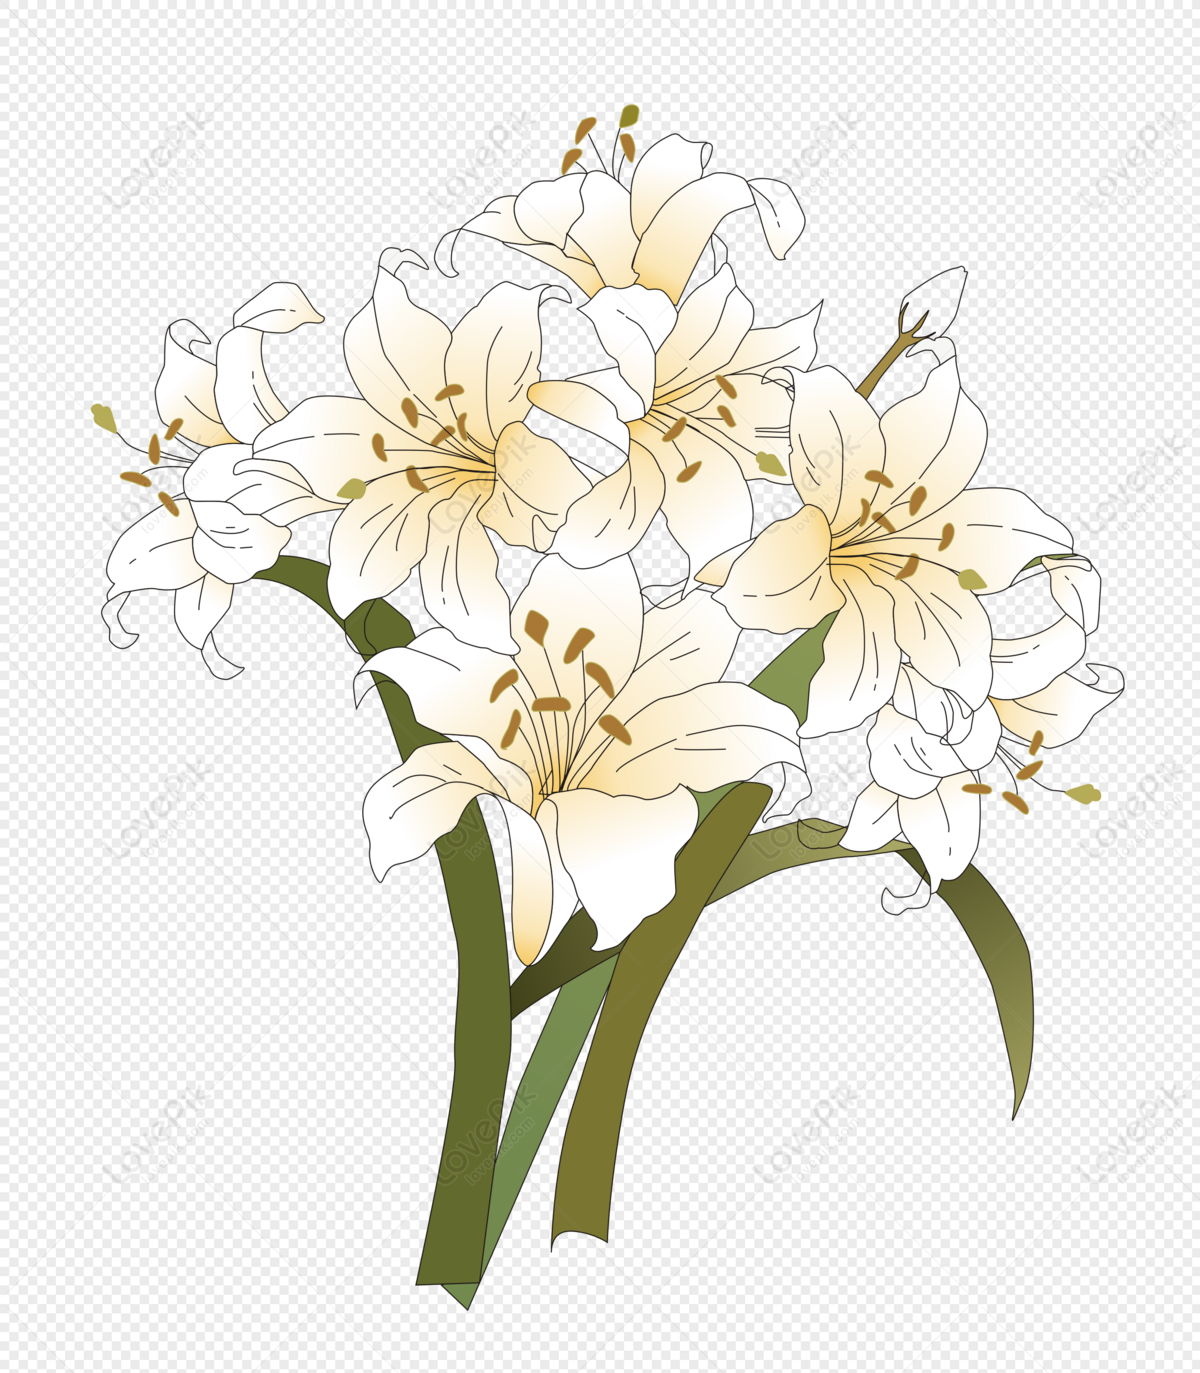 Photo de Jonquille Printemps Botanique, jonquille, plante, fleur Graphique  images free download - Lovepik | 400945563